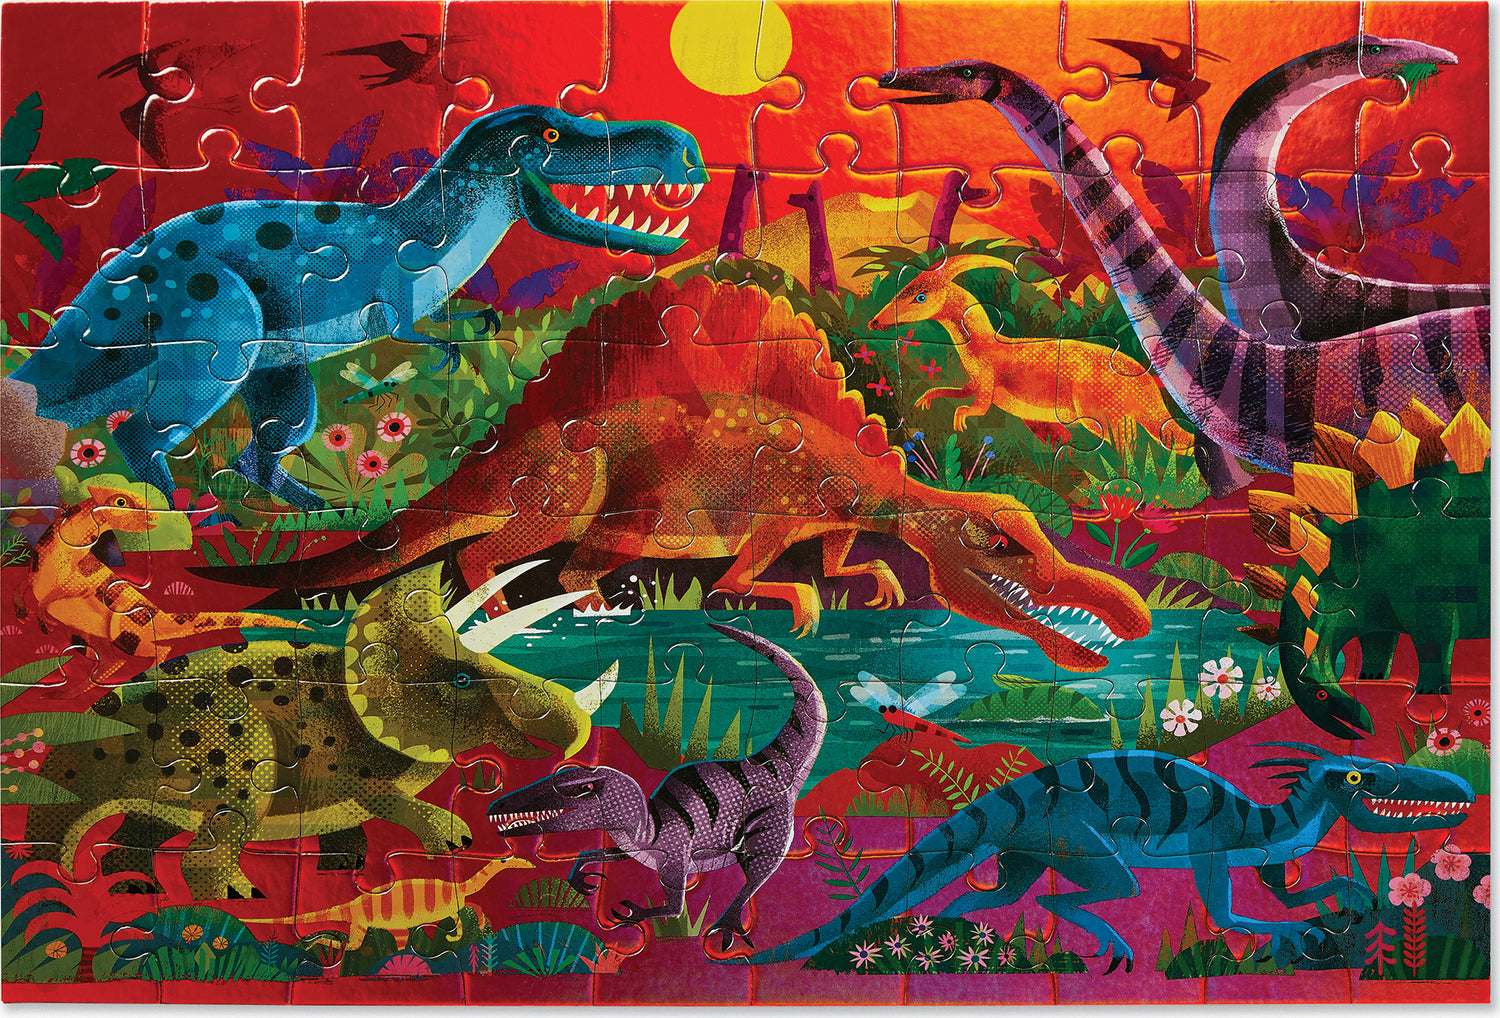 Dazzling Dinosaurs Foil Puzzle (60pc)